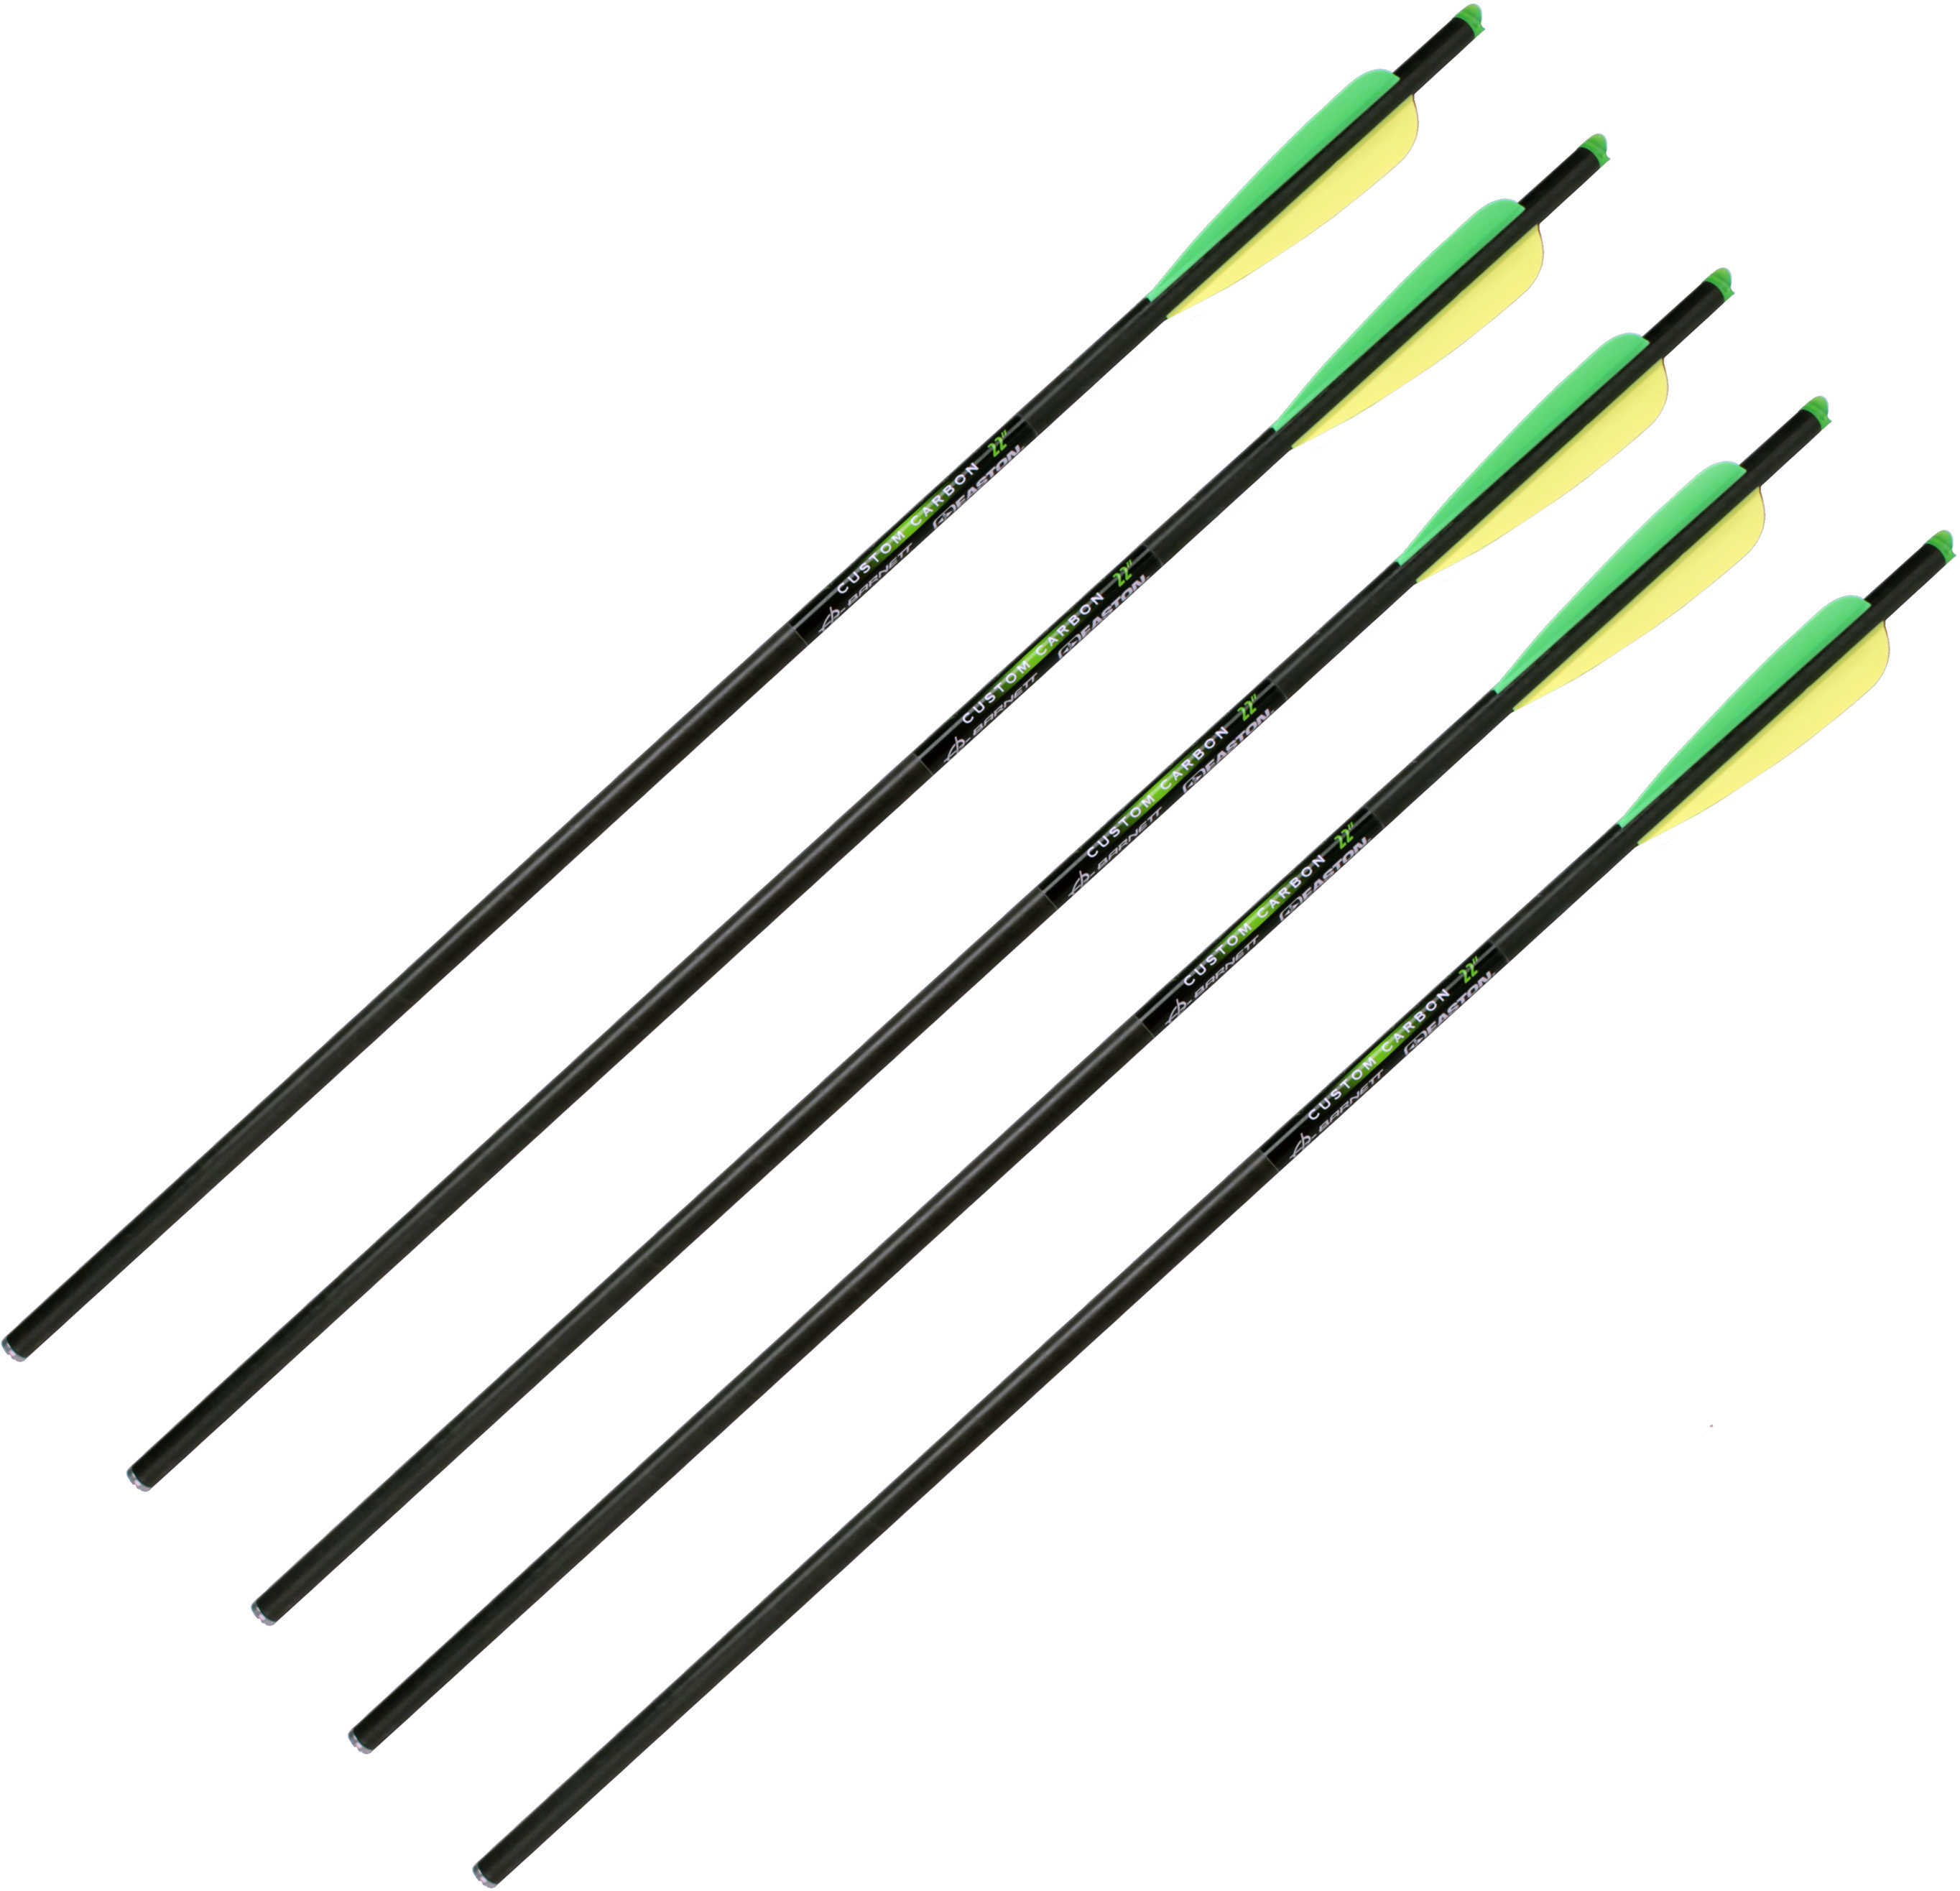 Barnett Arrows With Field Point/Moon Nock Md: 16079